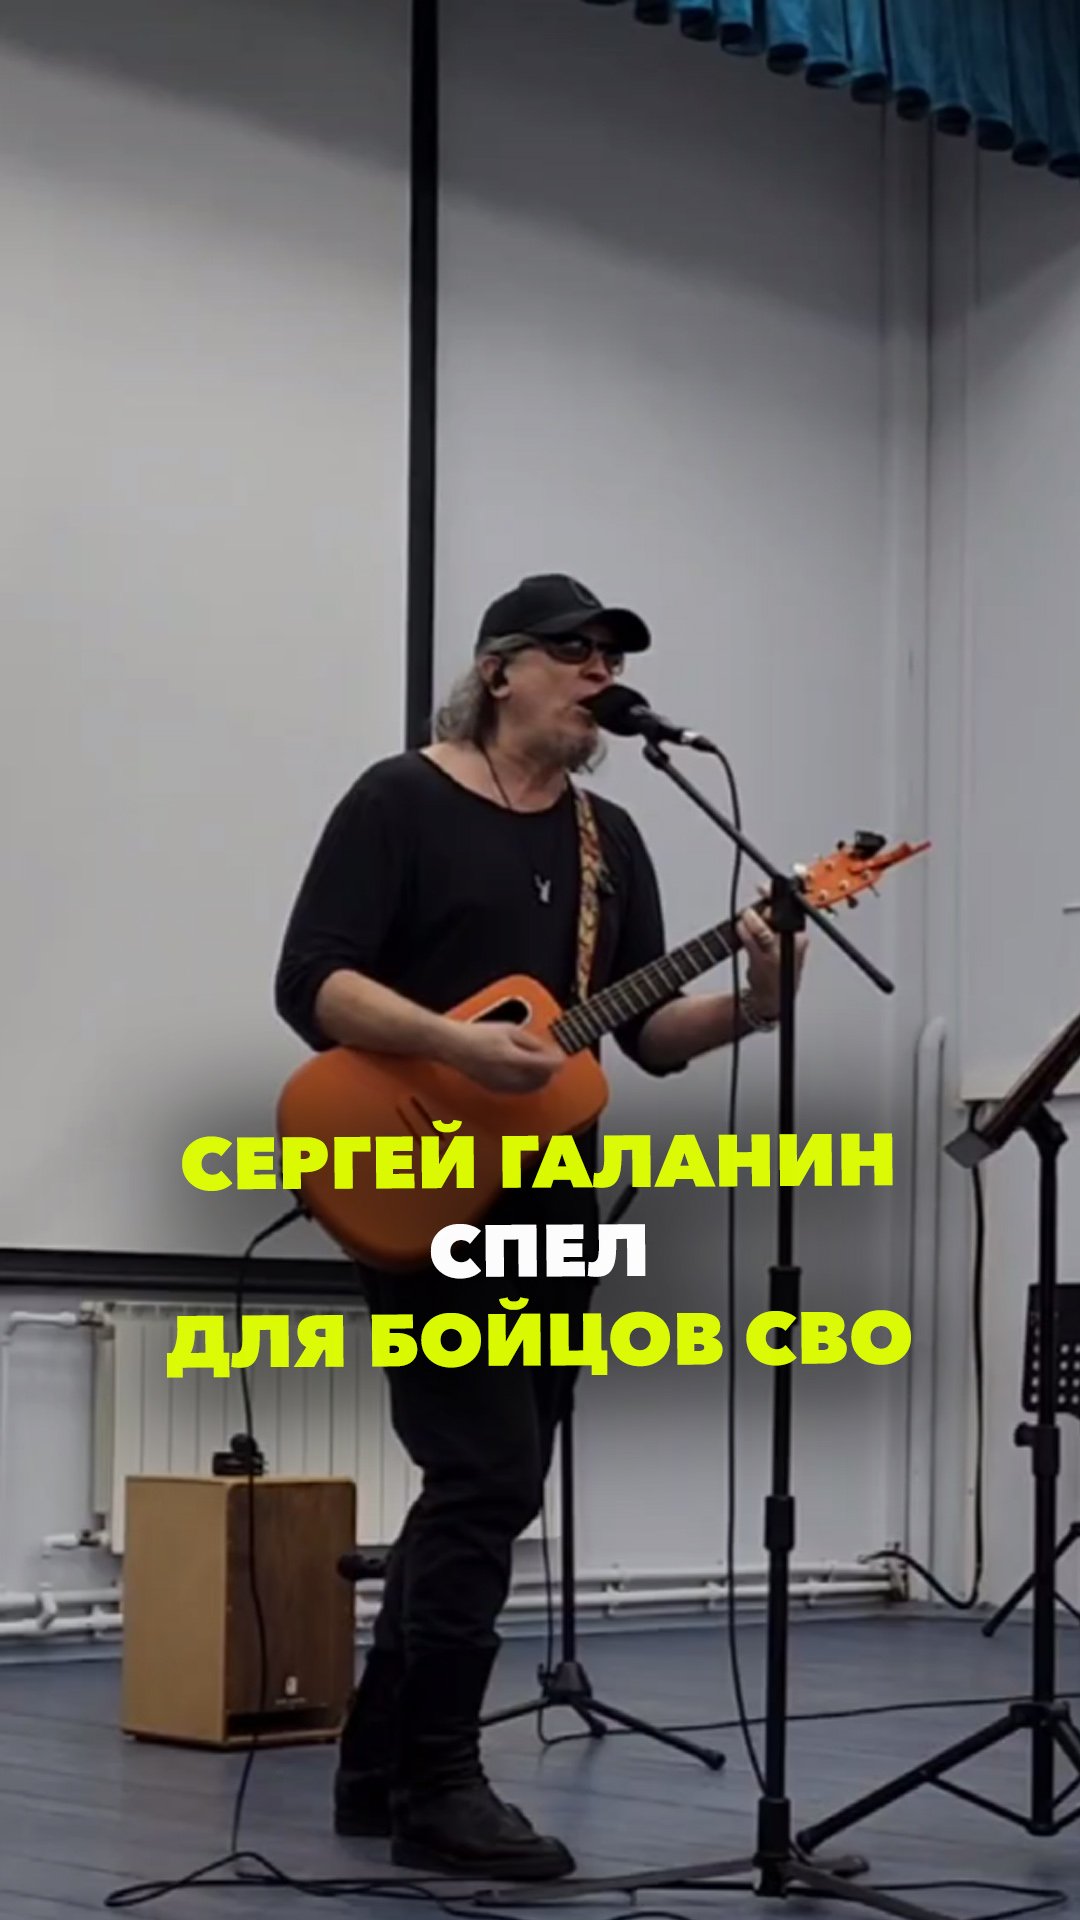 Сергей Галанин спел для бойцов СВО в реабилитационном центре "Ясенки"